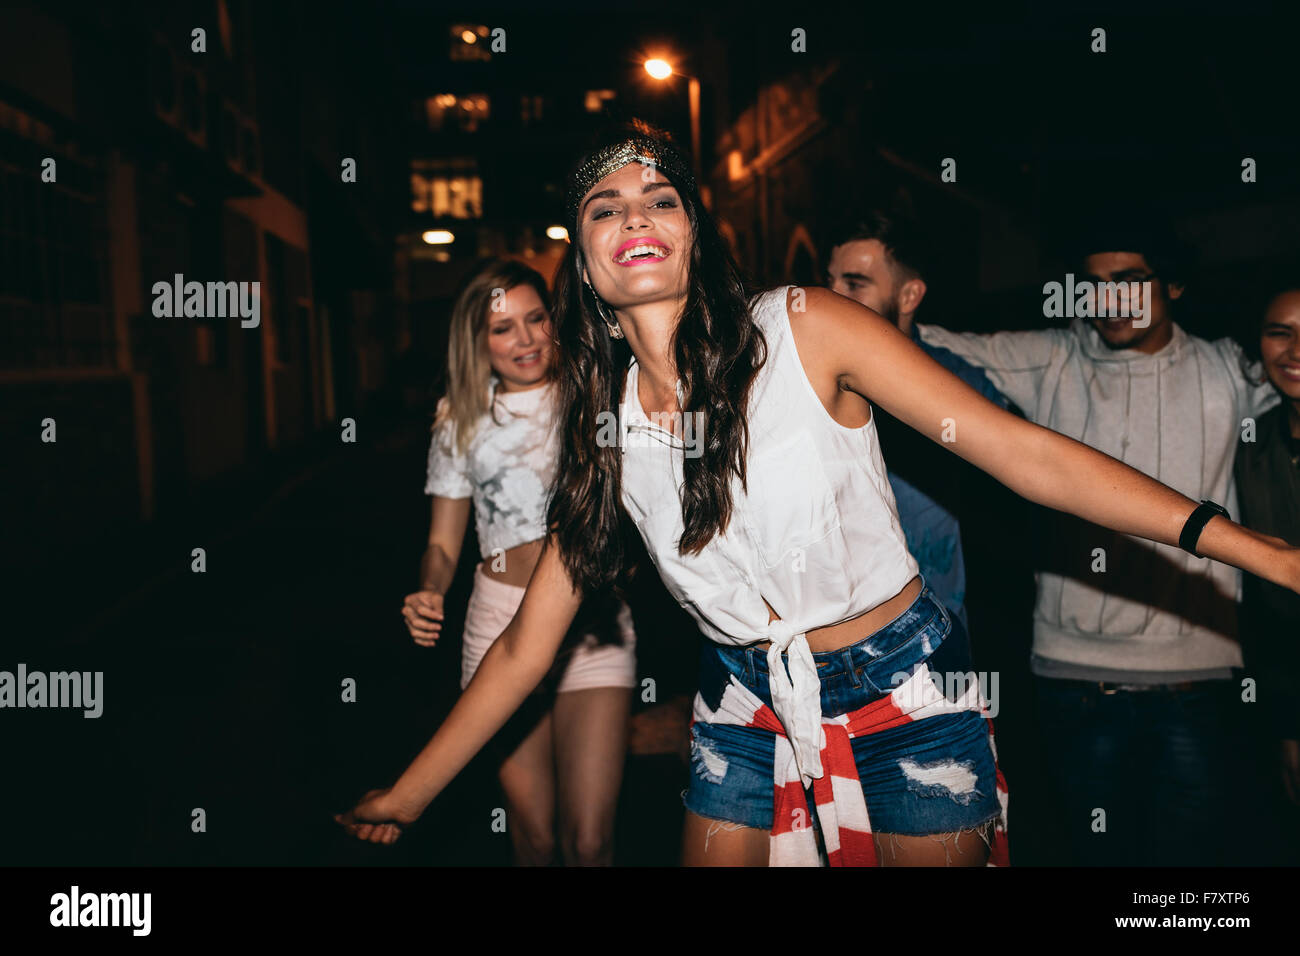 Porträt der schönen jungen Frau tanzen mit ihren Freundinnen im Hintergrund. Glückliche junge Frau in Party mit Freunden in der Nacht. Stockfoto